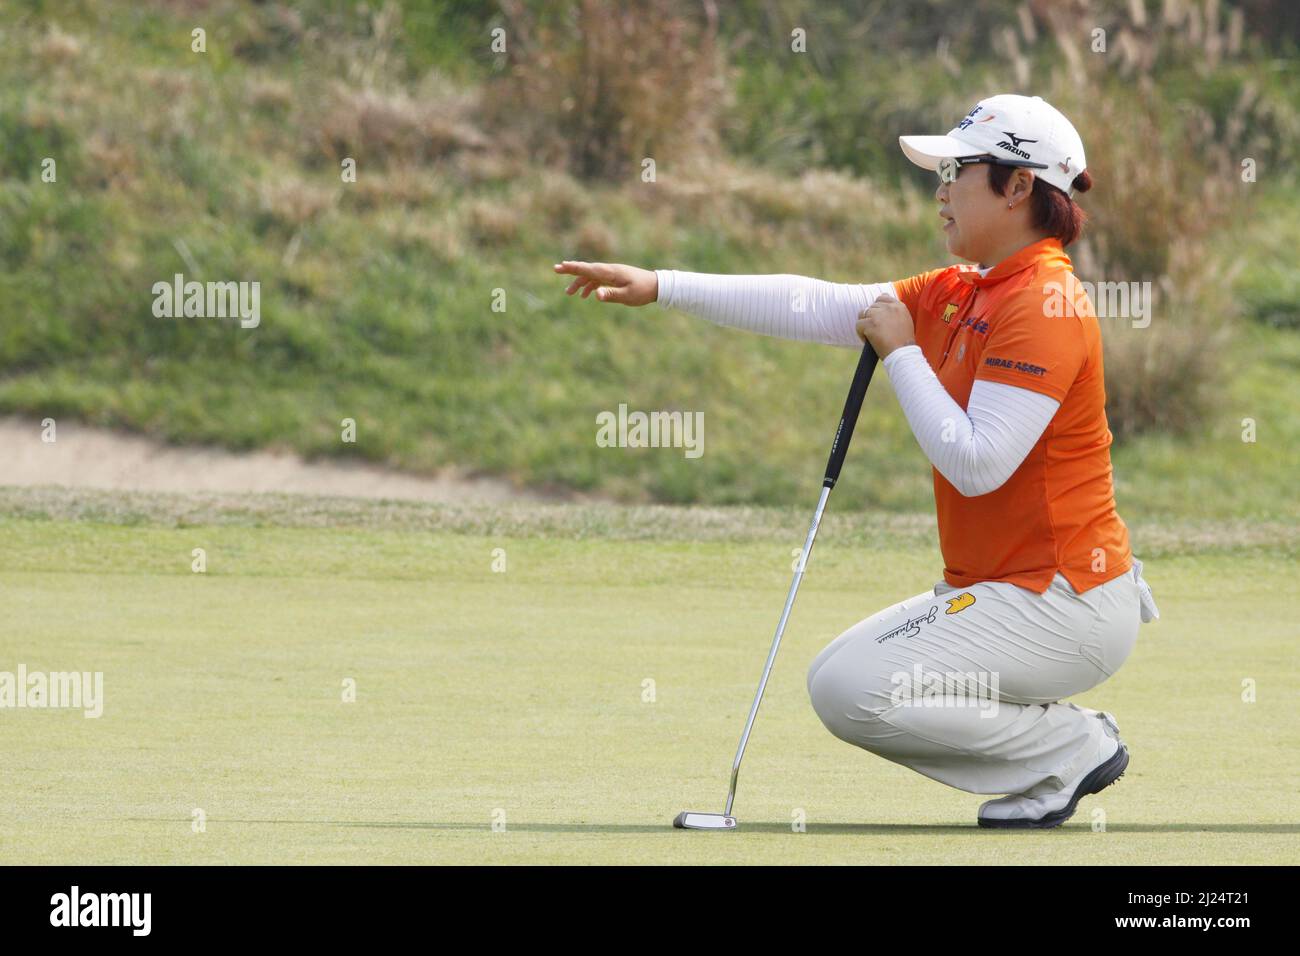 8 octobre 2011-Incheon, Corée du Sud-SHIN, Jiyai de Corée du Sud, aligner un putt sur le 2th trous lors du championnat LPGA par Hana Bank au club de golf SKY72 à Incheon le 8 octobre 2011, Corée du Sud. Banque D'Images